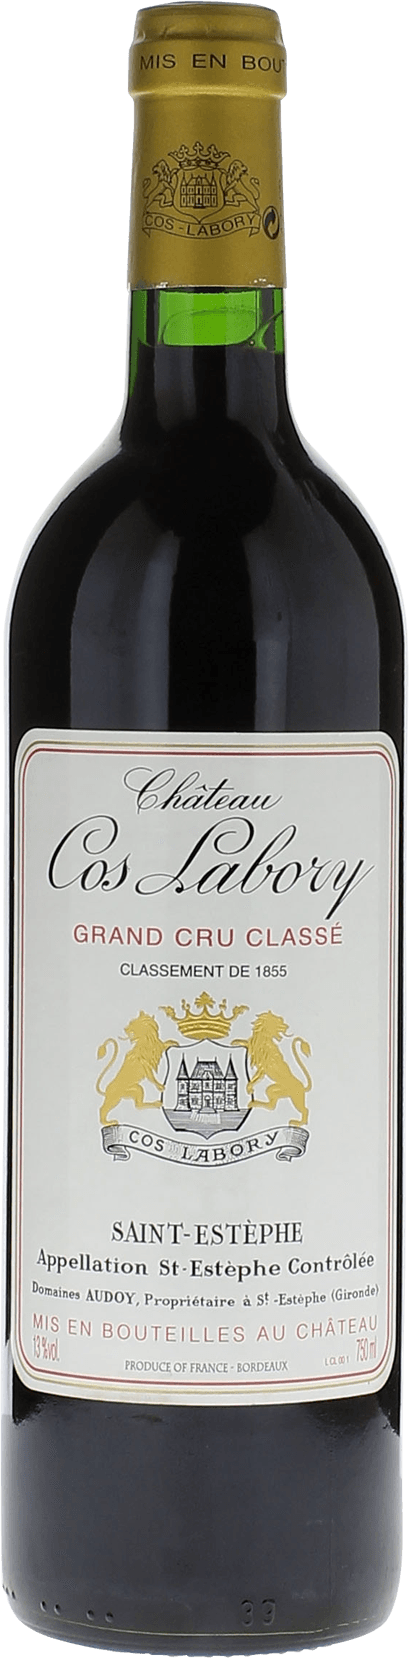 Cos labory 2014 5me Grand cru class Saint-Estphe, Bordeaux rouge